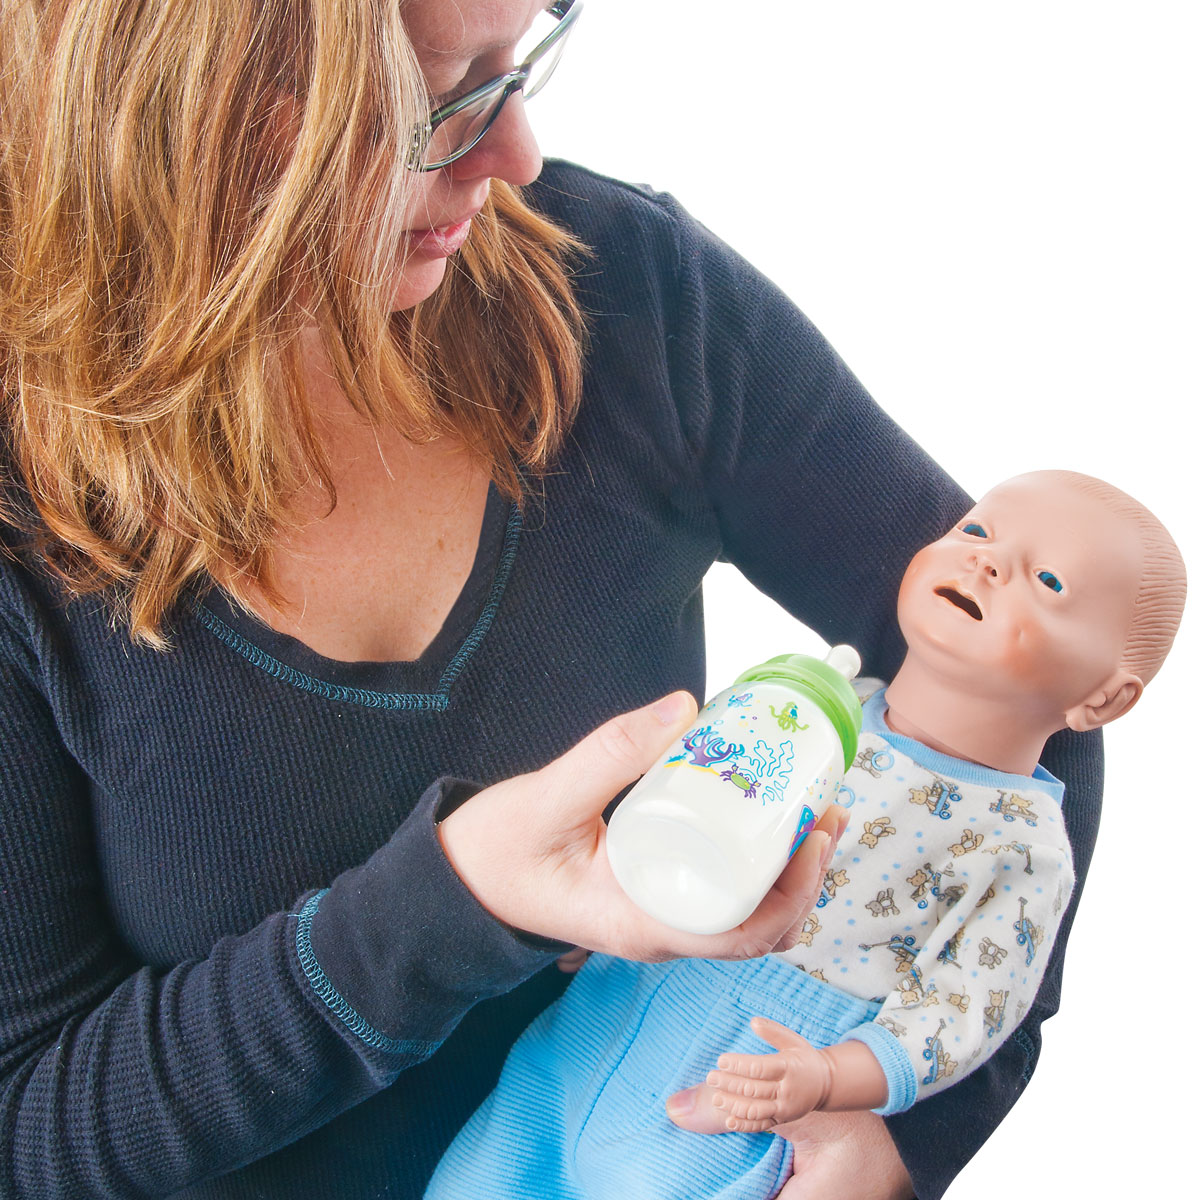 Mannequin de soins Nourrisson - 1000505 - P30 - Les soins aux patients  nouveau-nés - 3B Scientific